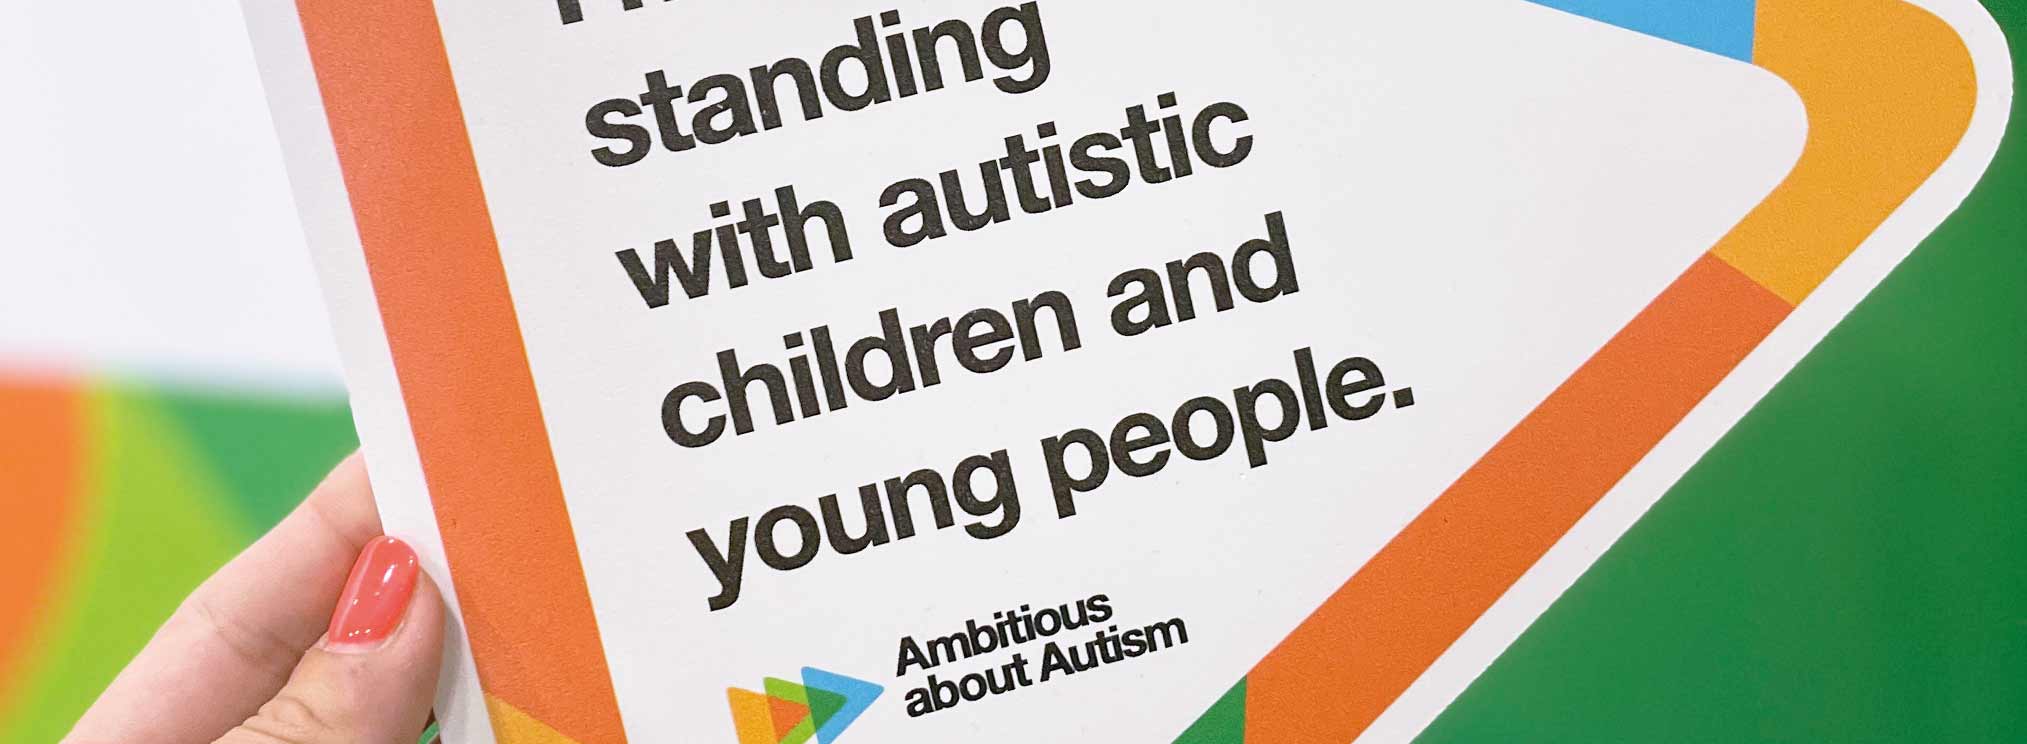 Ambitions about autism autism show